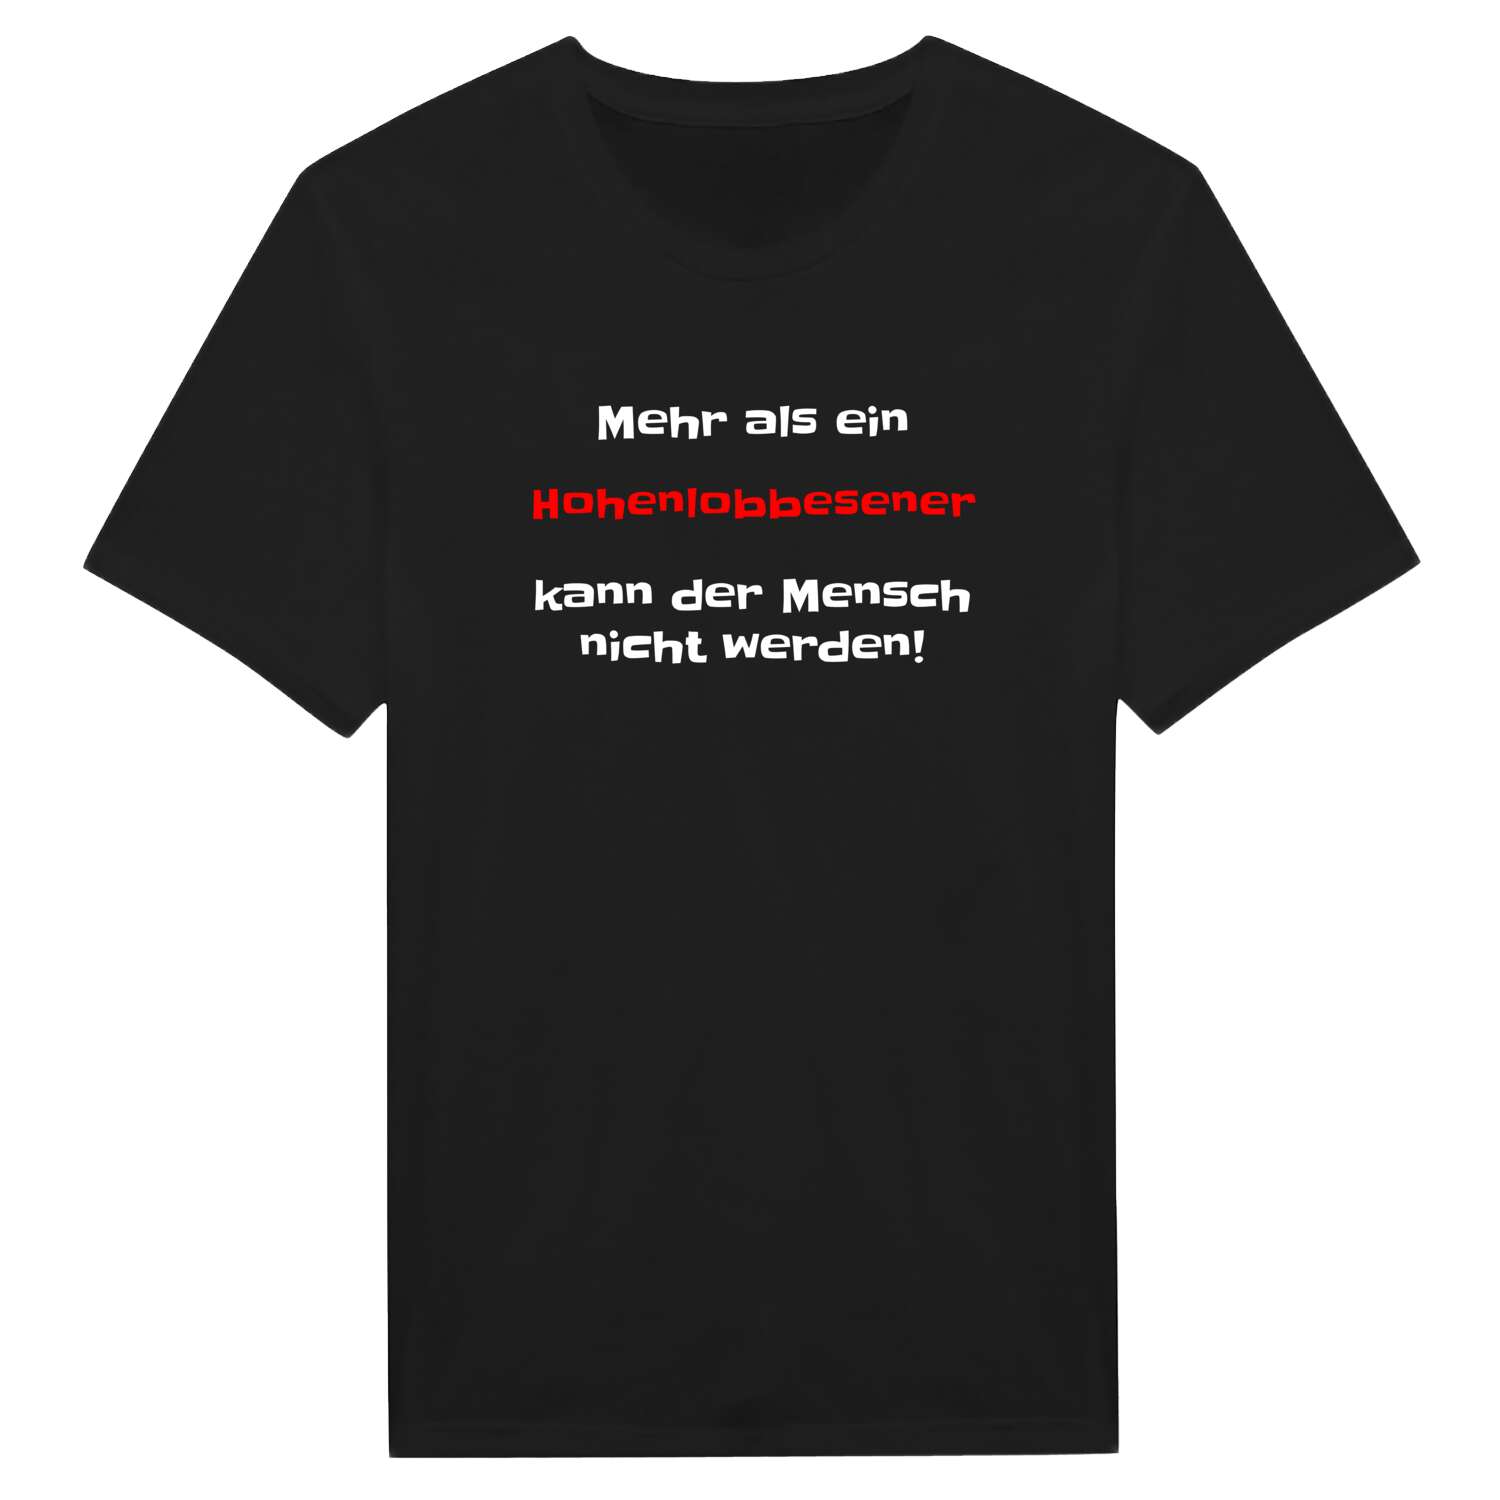 Hohenlobbese T-Shirt »Mehr als ein«